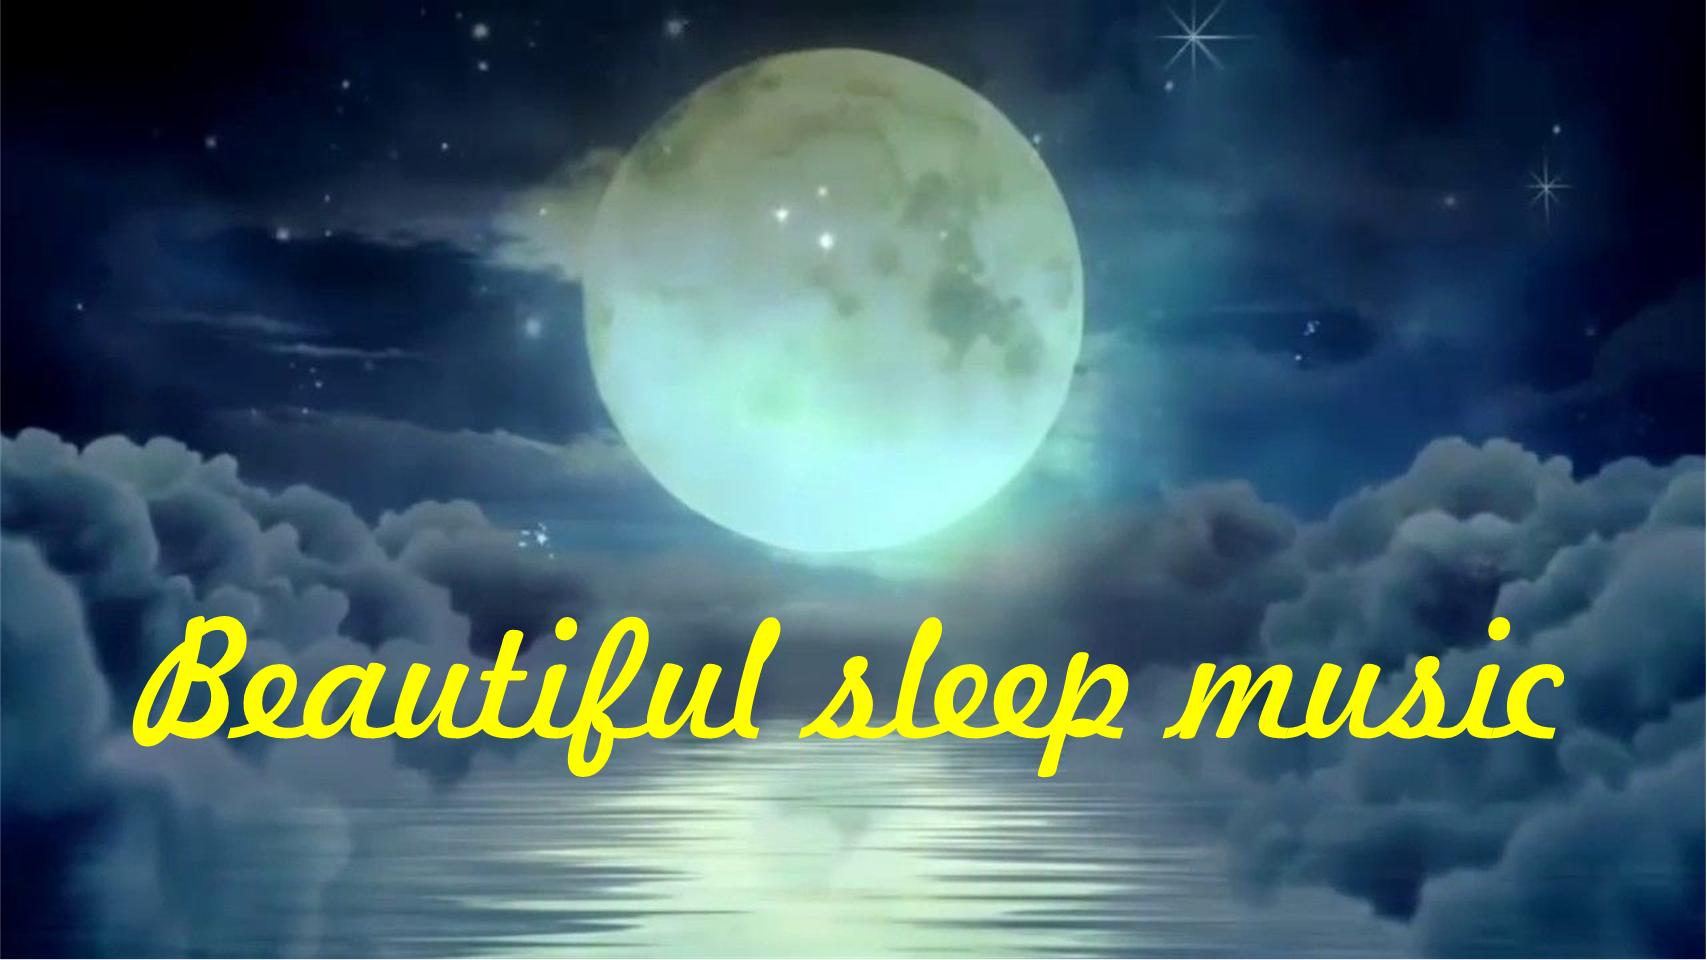 Beautiful sleep music - Красивая музыка сна